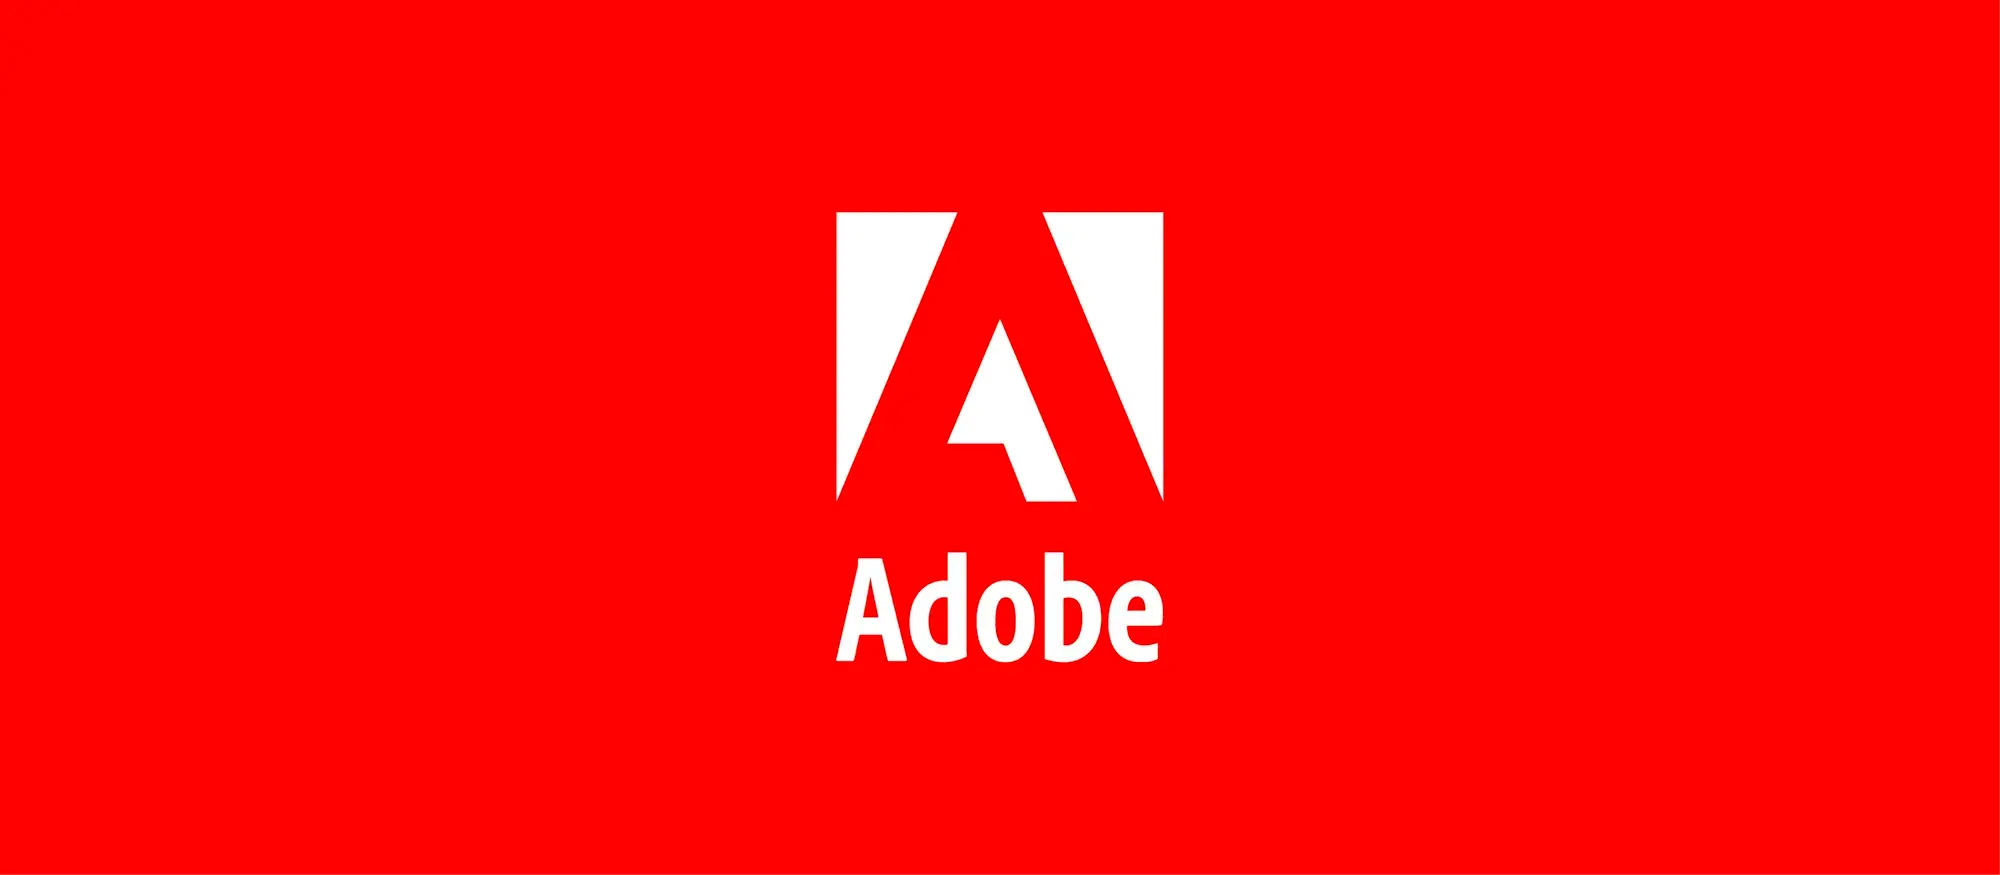 Adobe gebruikt kunstmatige intelligentie om audiotracks te scheiden